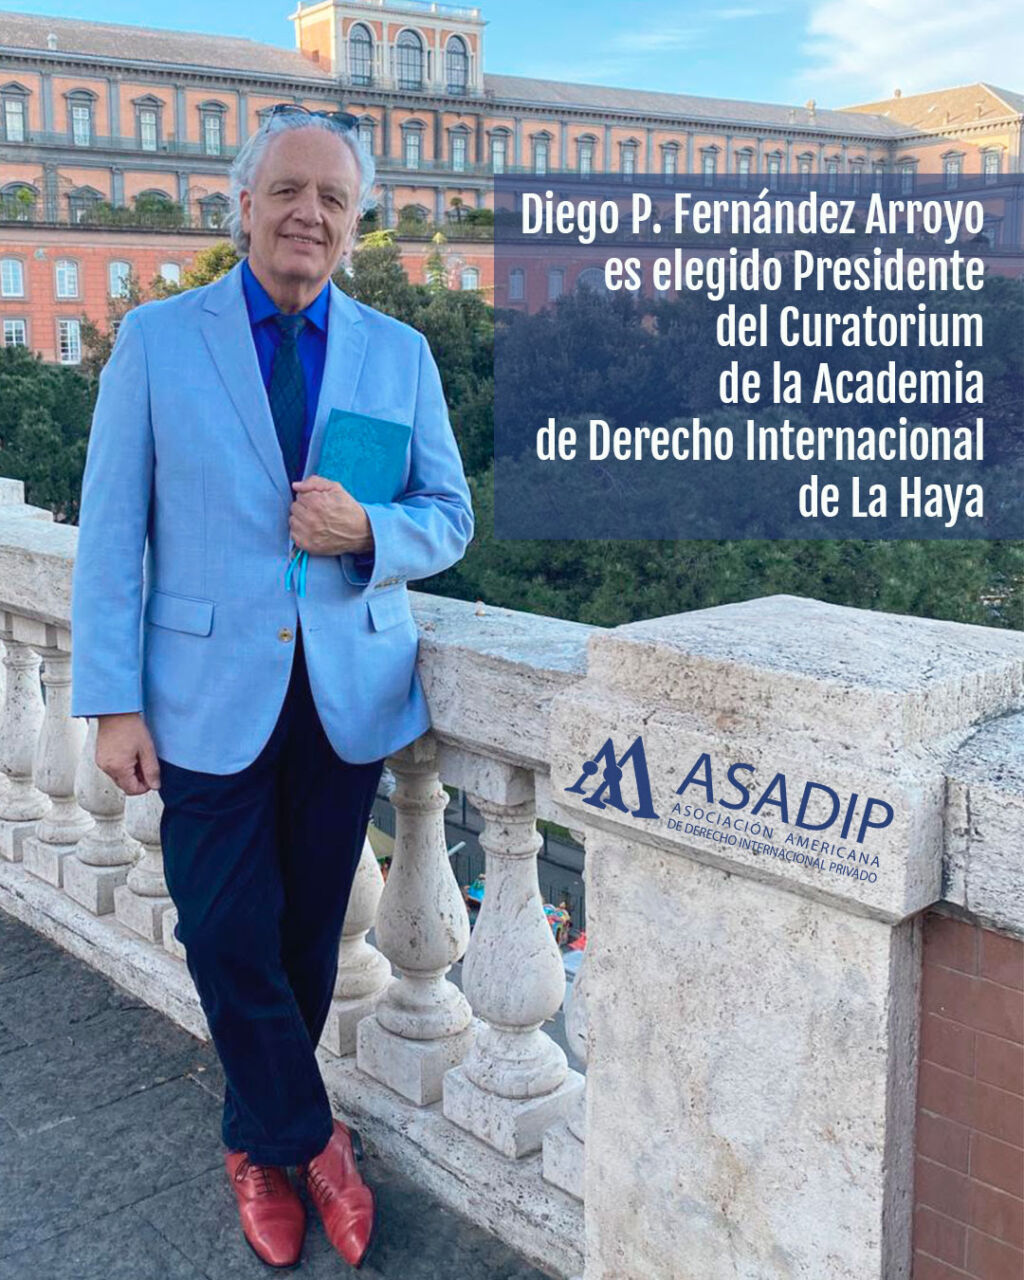 Diego P. Fernández Arroyo es elegido Presidente del Curatorium de la Academia de Derecho Internacional de La Haya